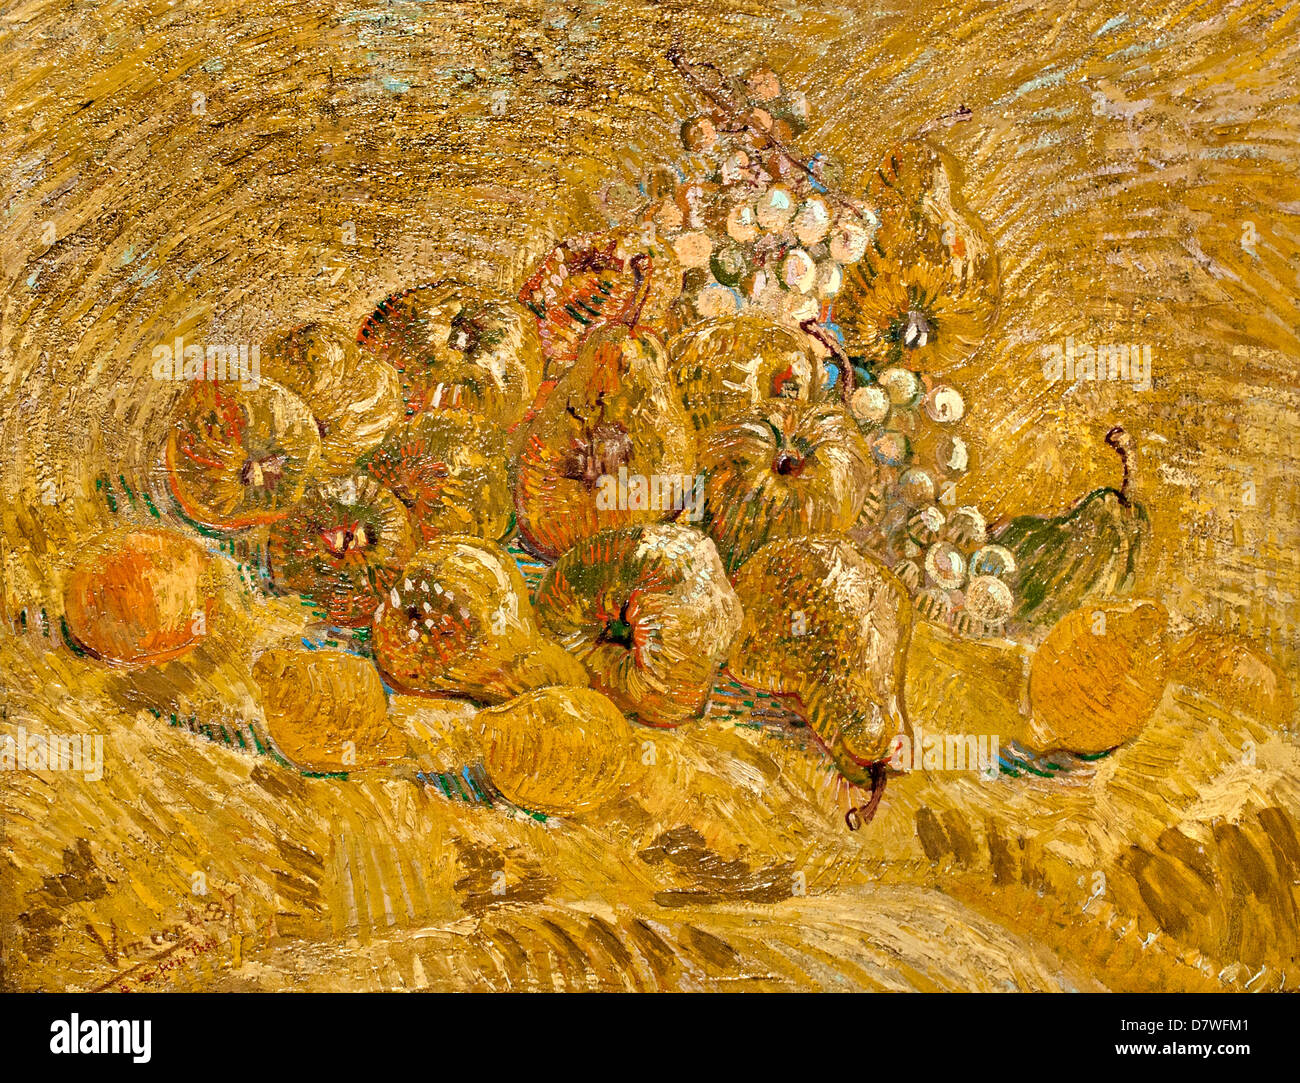 Cotogne Limoni le pere e le uve 1887 Vincent van Gogh 1853 - 1890 Paesi Bassi olandese Post Impressionismo Foto Stock